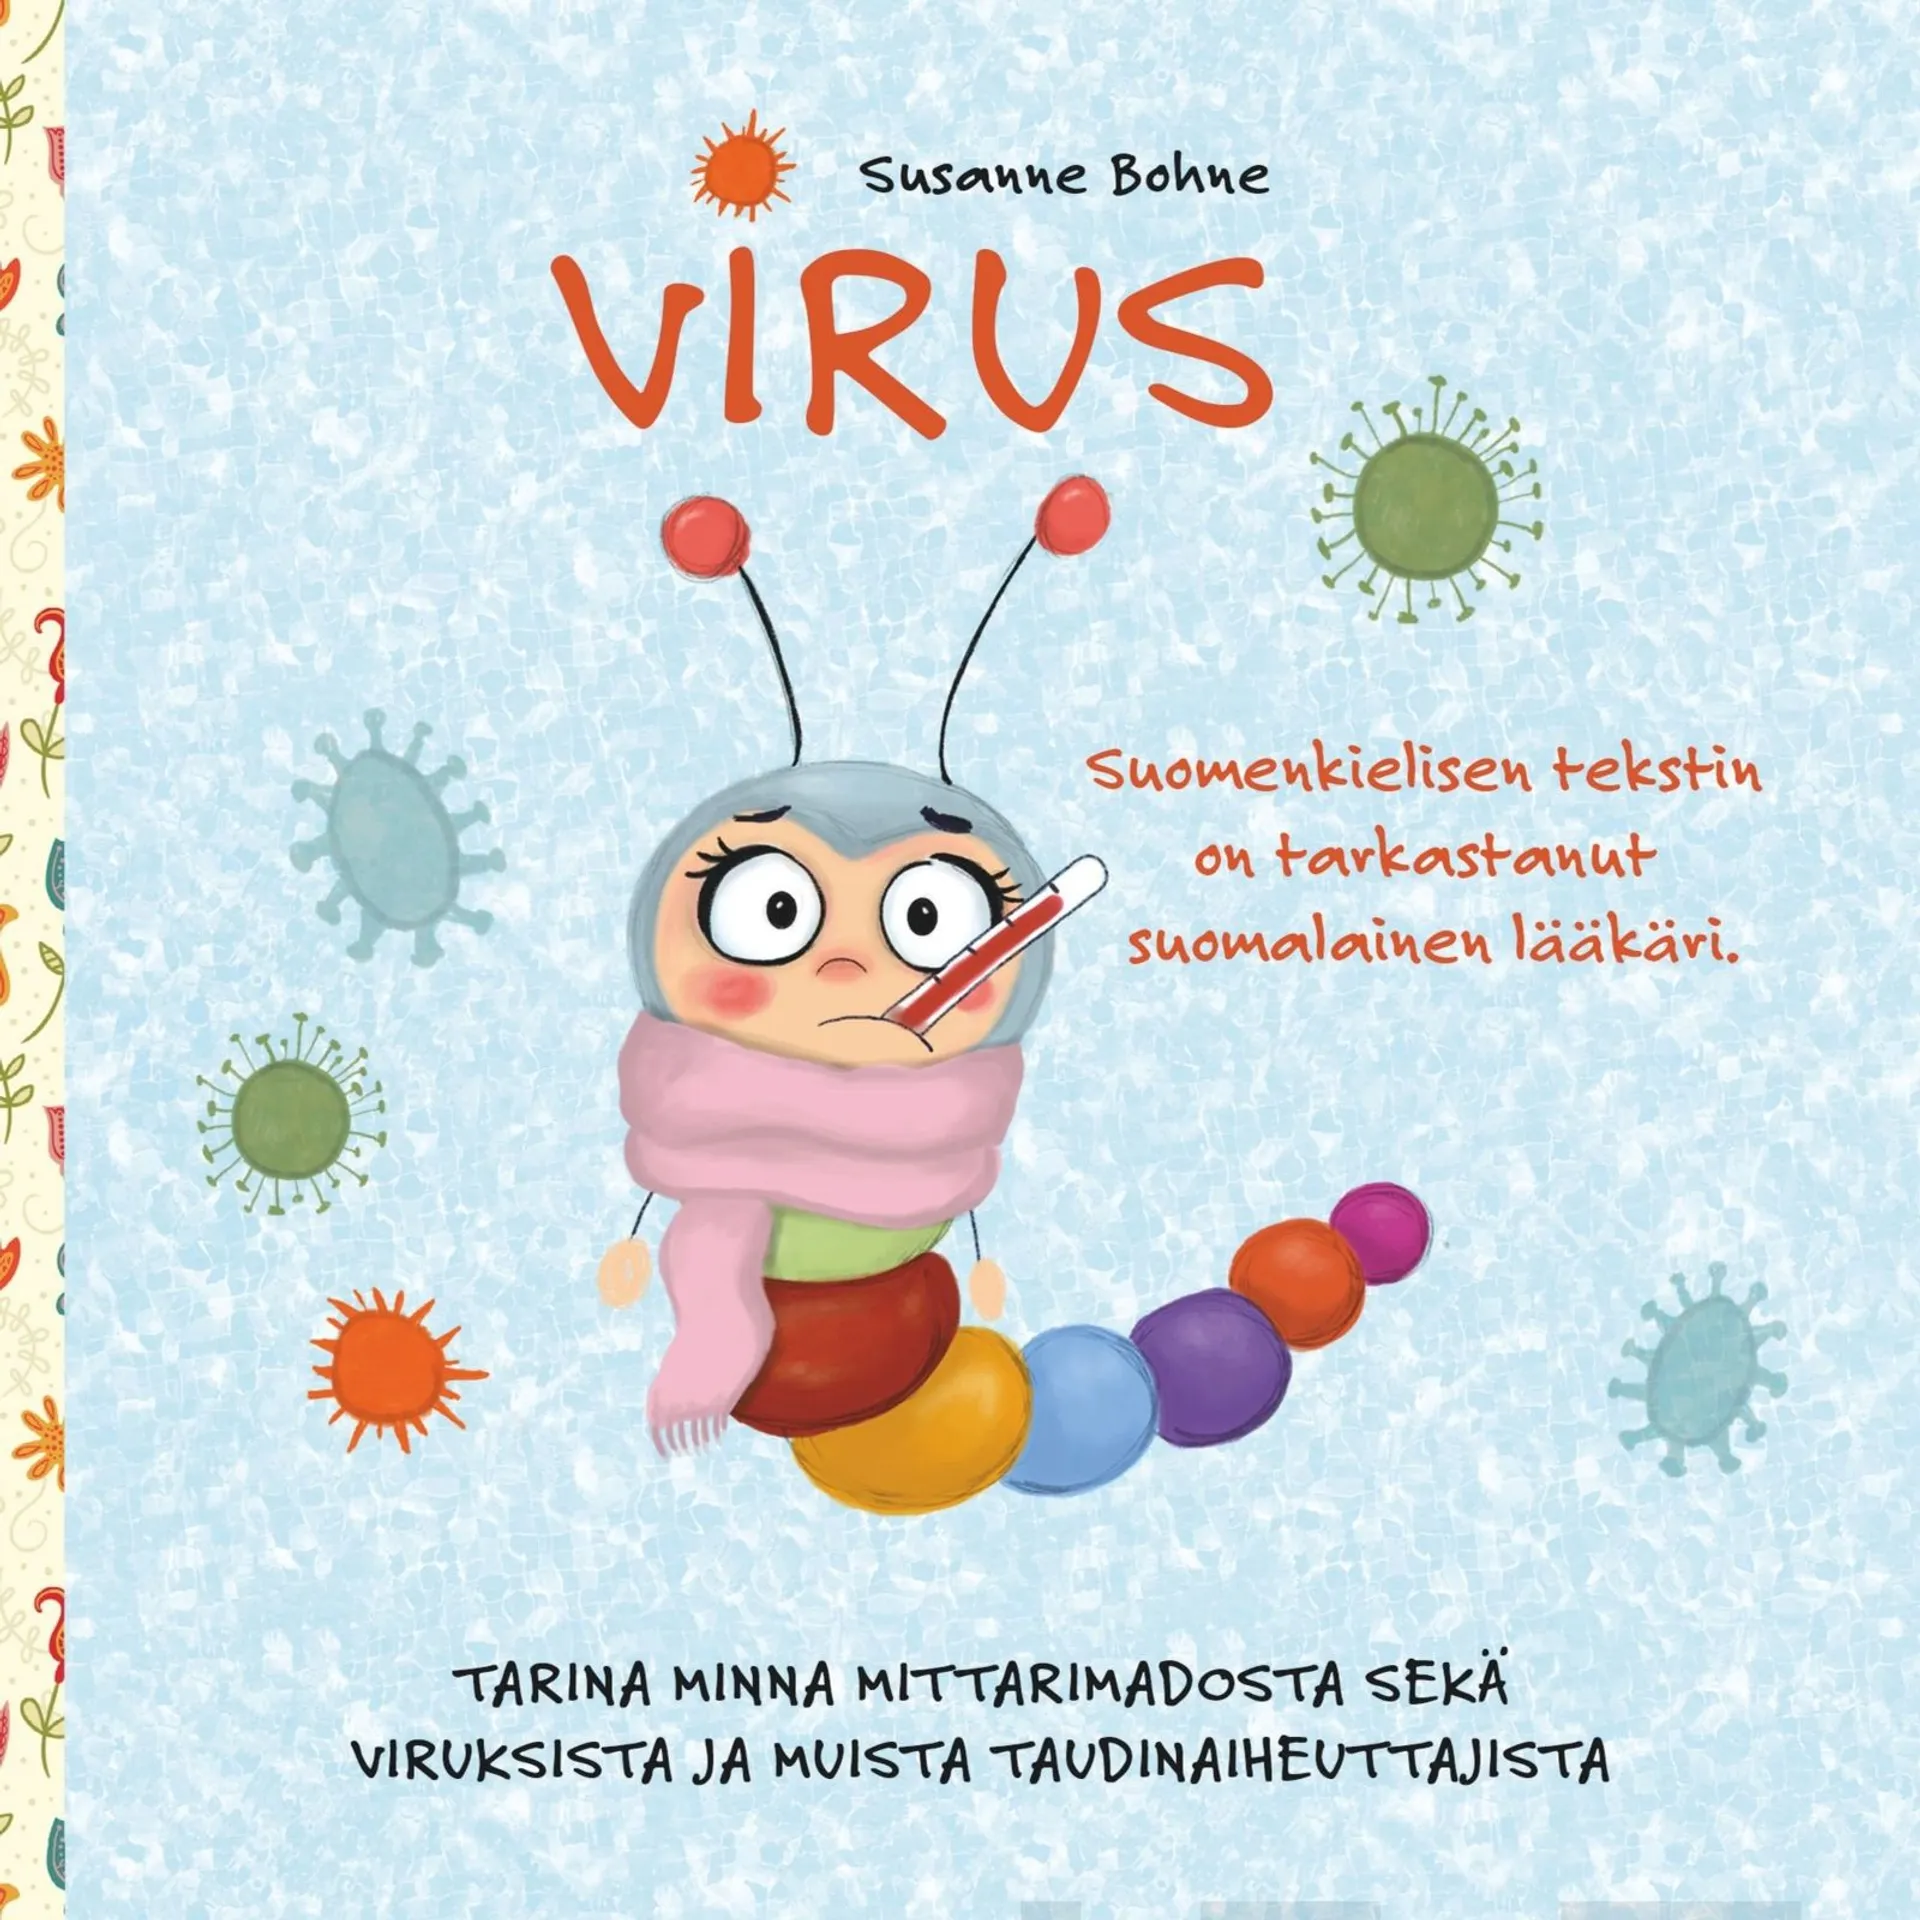 Bohne, Virus: Tarina Minna Mittarimadosta, viruksista ja muista taudinaiheuttajista - Tietoa ja hauskoja tehtäviä